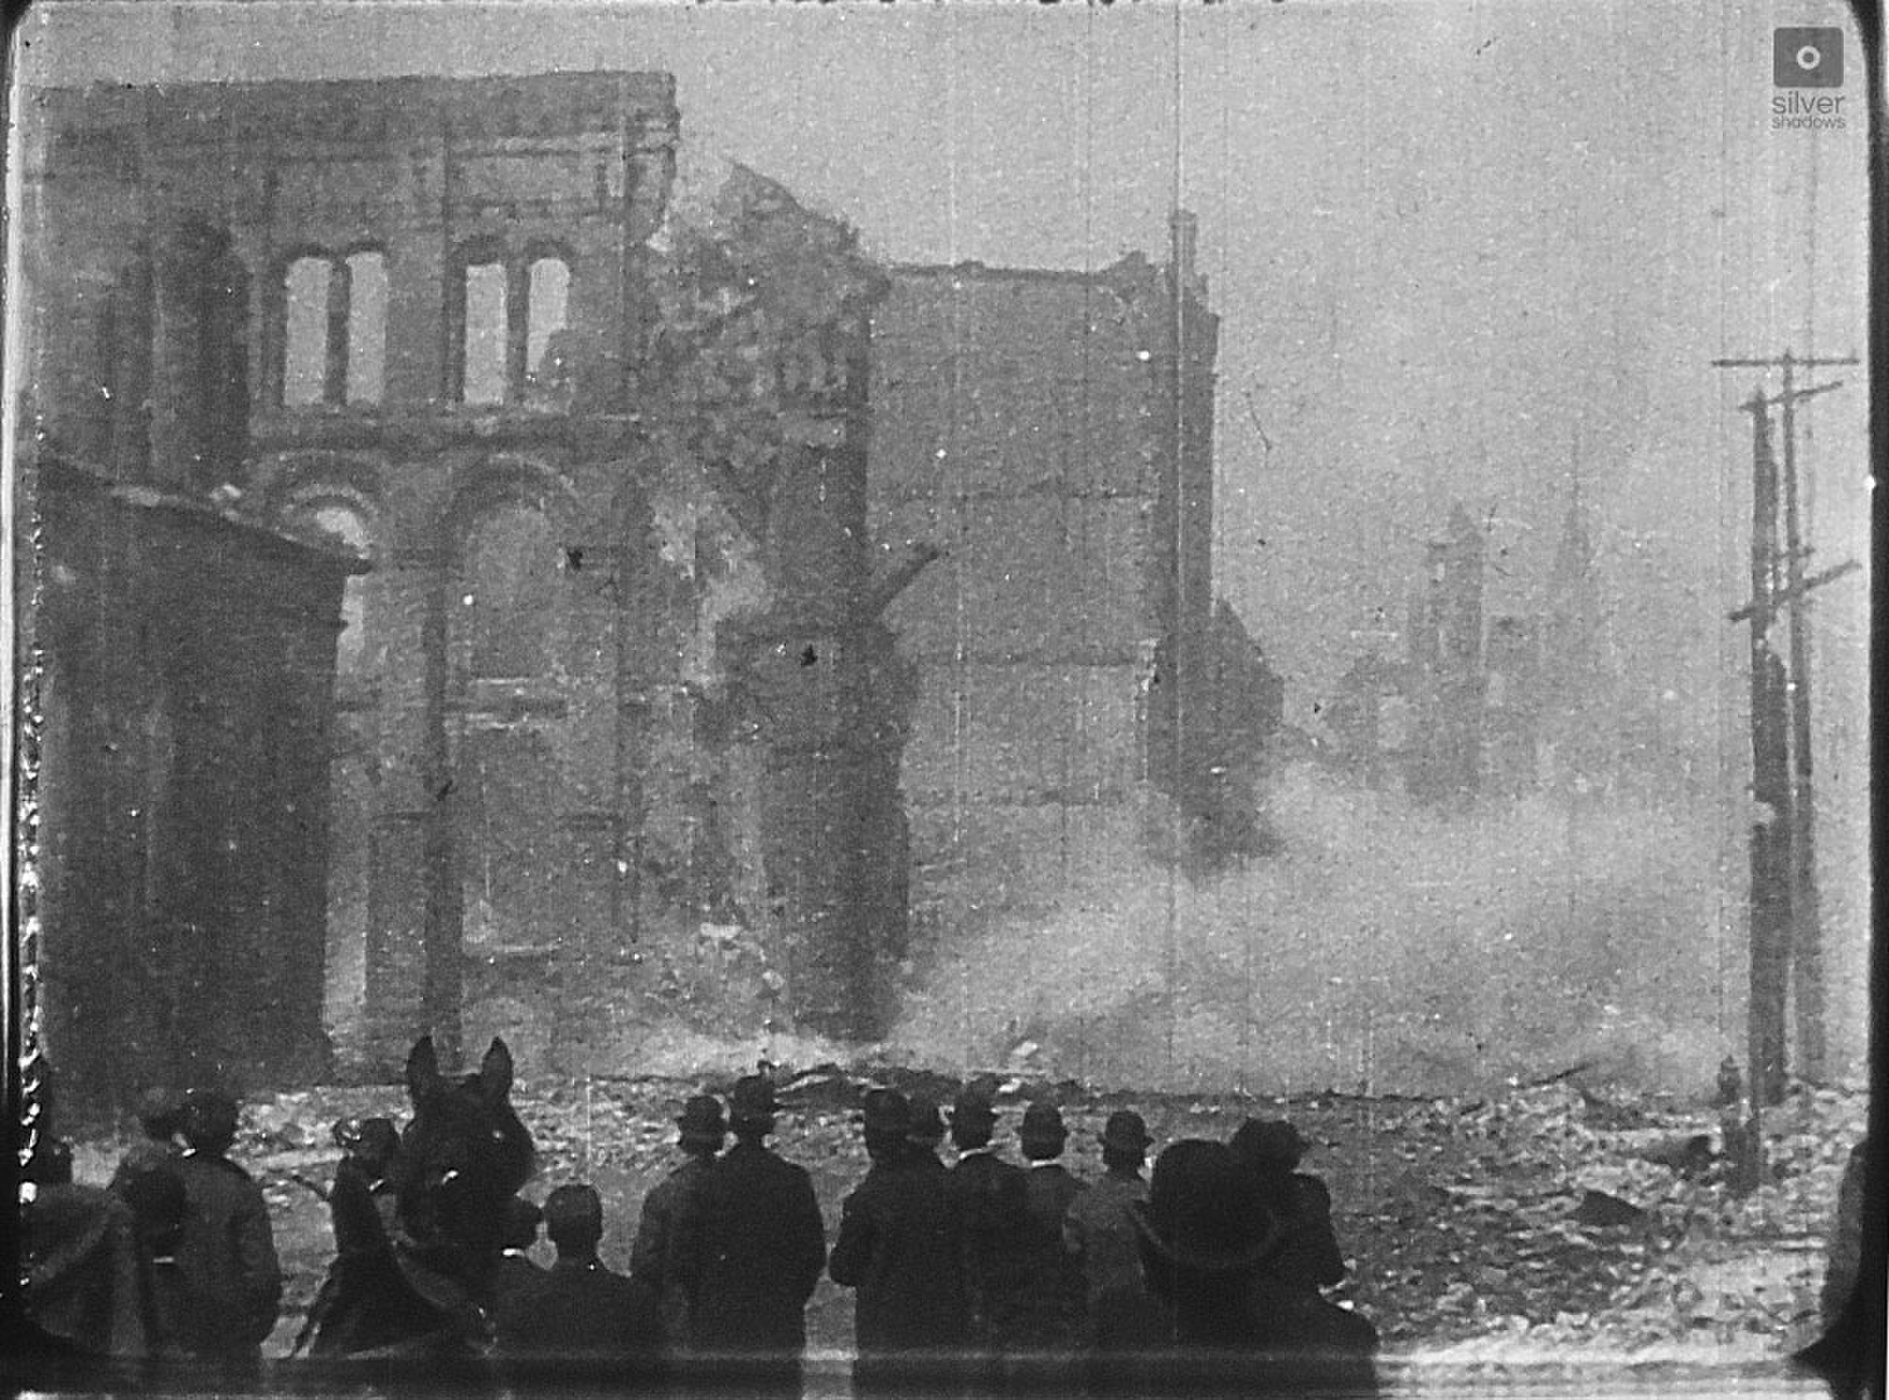 San francisco earthquake 1906